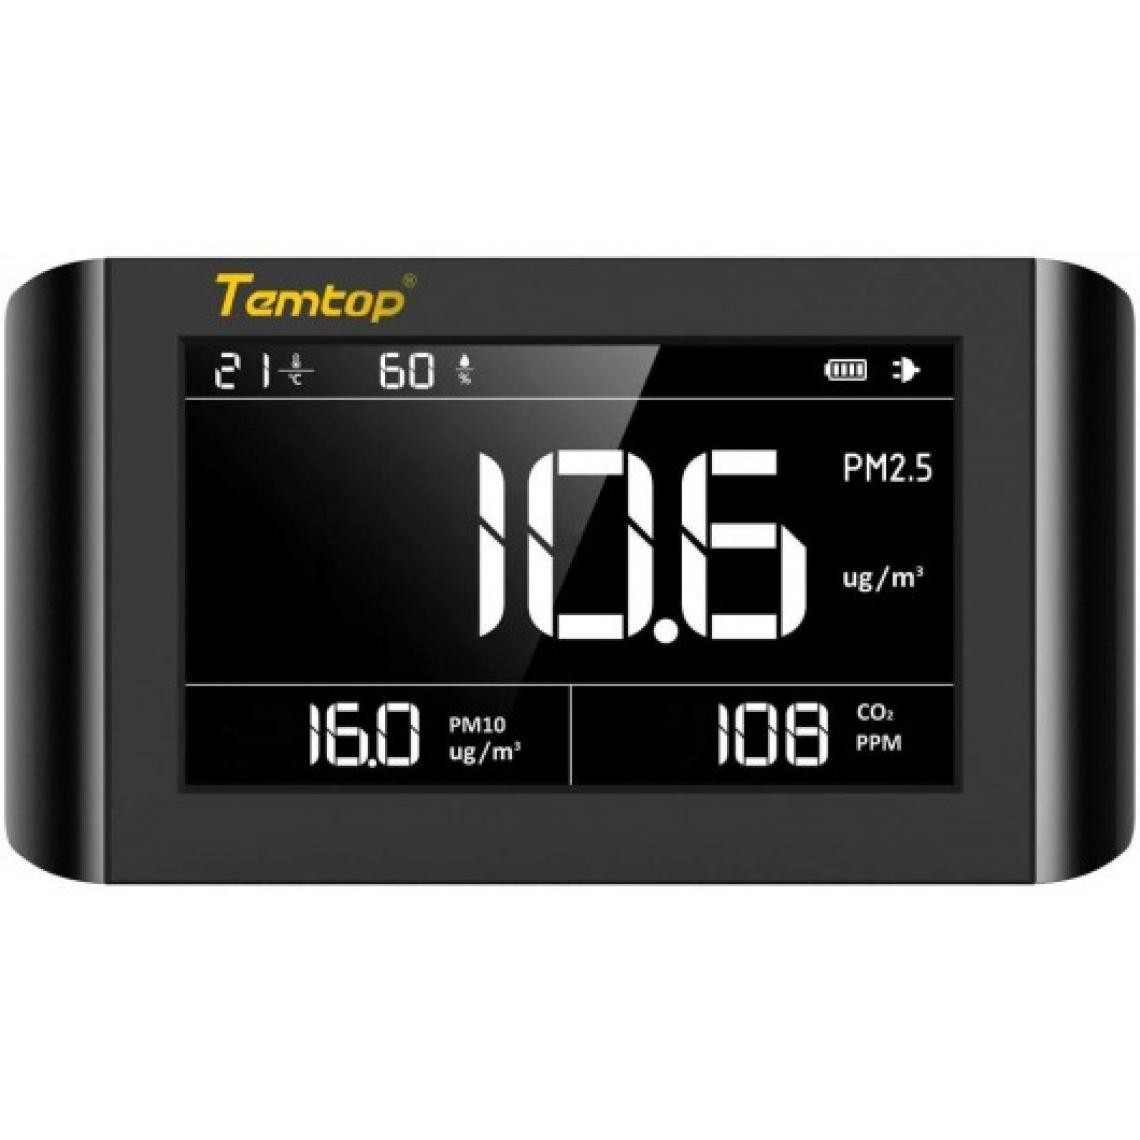 Temtop - Temtop P1000, le moniteur 5 en 1 - Autre appareil de mesure